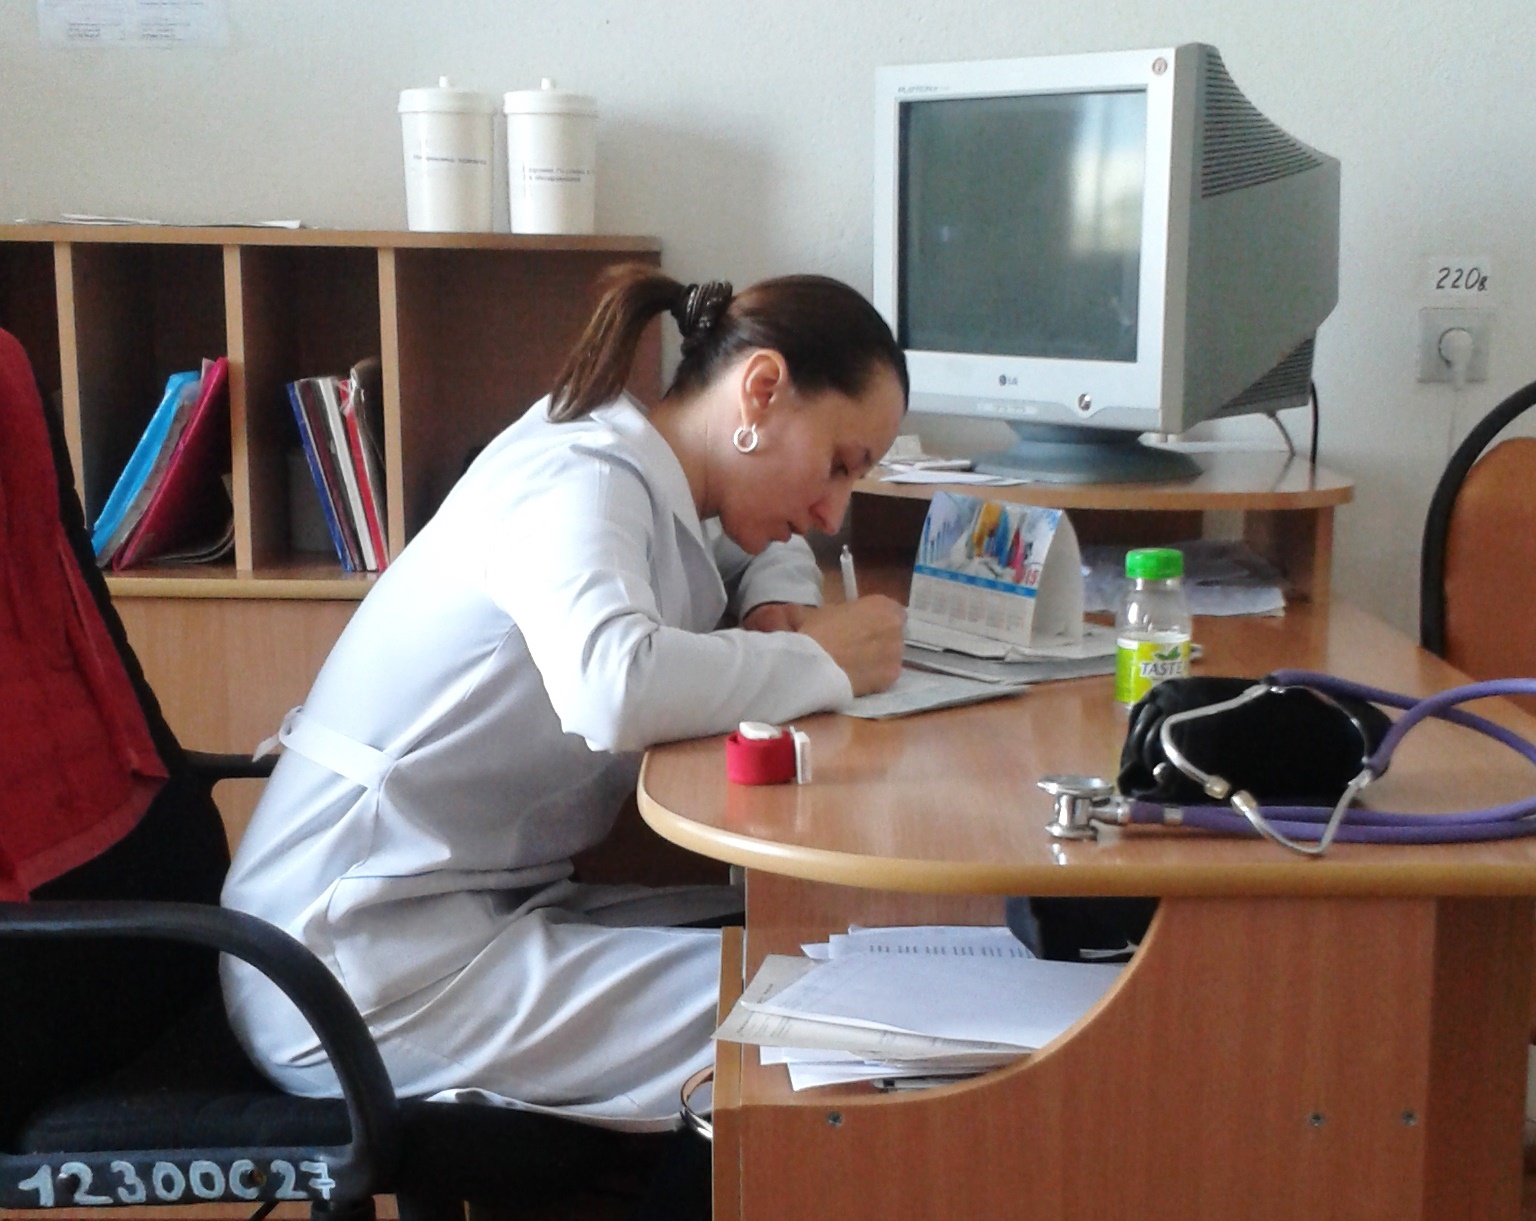 Парий Валентина Вячеславовна, работала медсестрой в 2012-2014 годах в Орловской сельской врачебной амбулатории